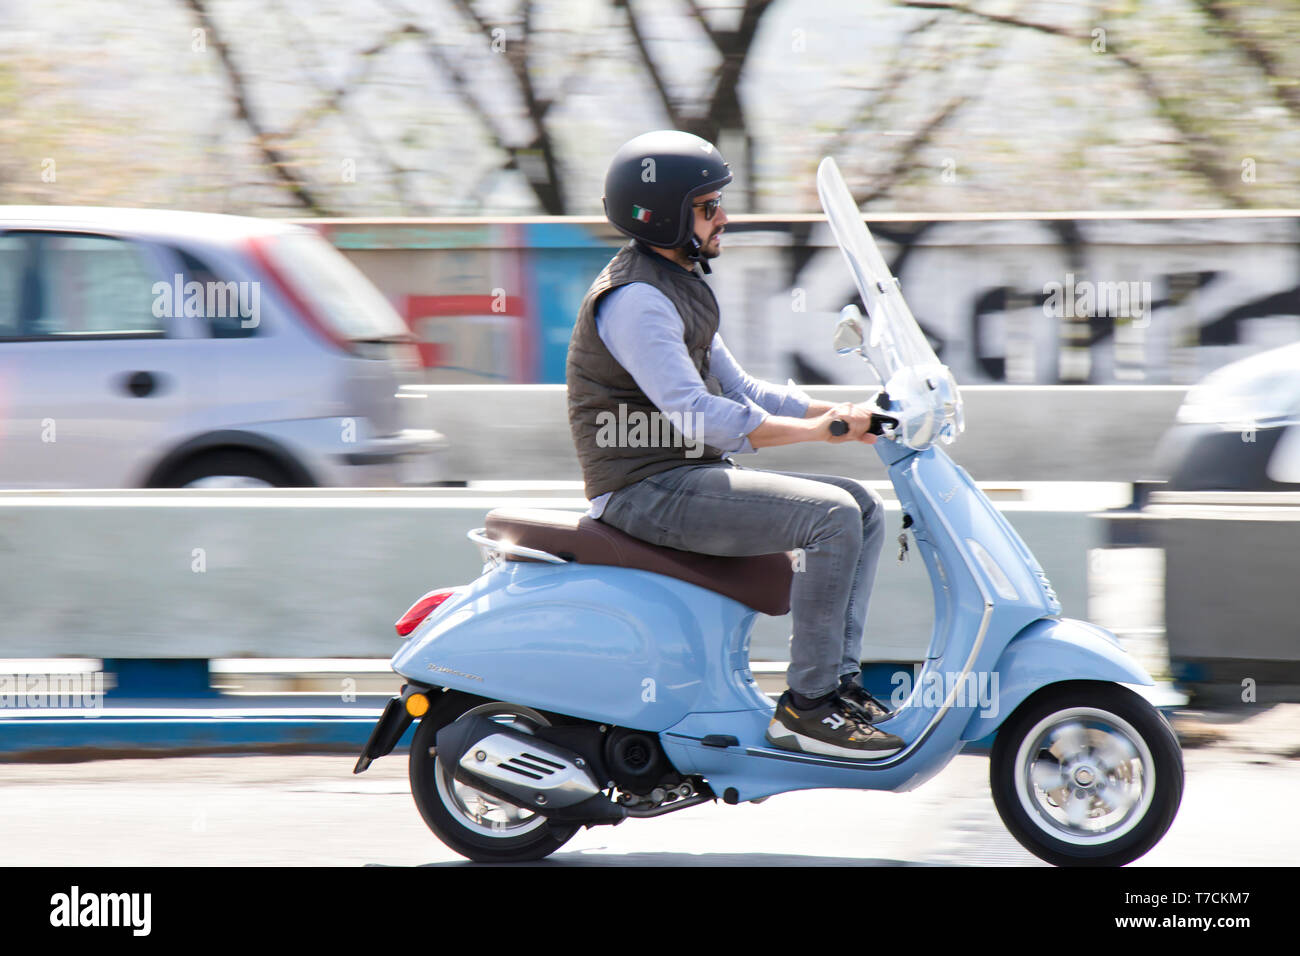 Belgrade, Serbie - Avril 25, 2019 : One man riding scooters Vespa bleu sur le pont à la circulation de la rue de la ville Banque D'Images